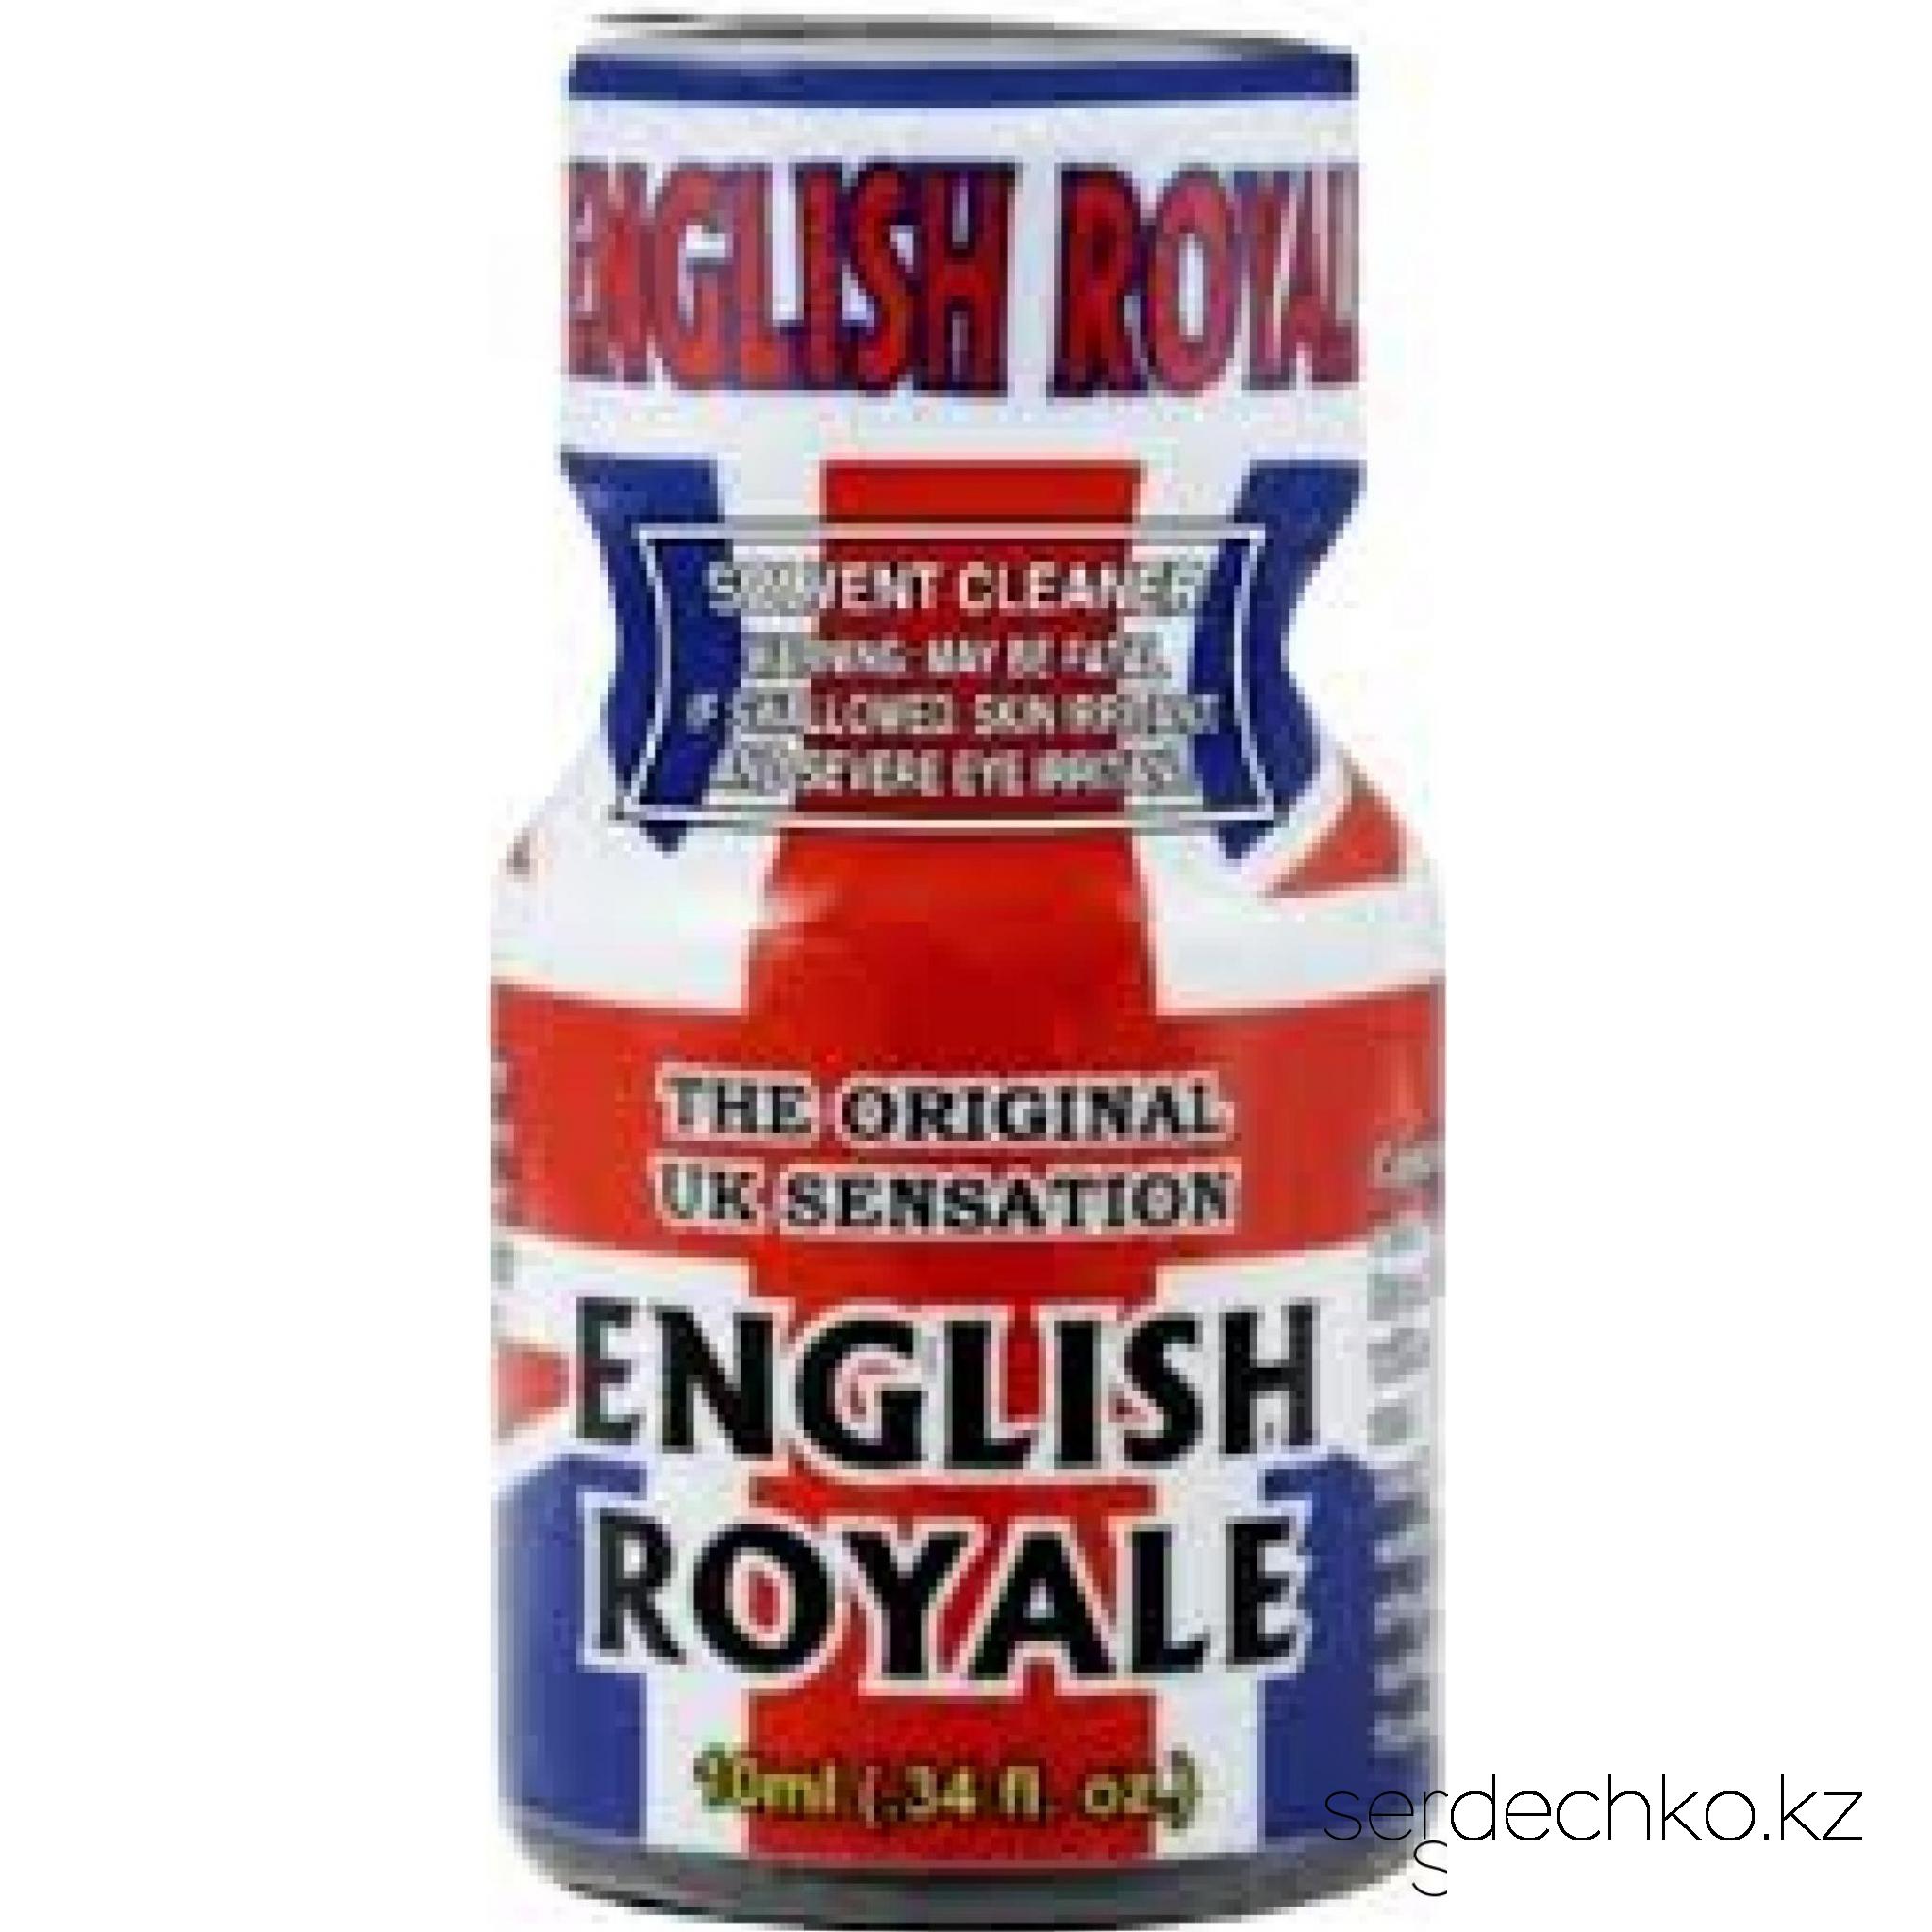 Попперс English Royale возбудитель,10 мл., 
	Попперс "English Royale"

	Попперс English Royale - легендарный попперс из Англии, такой же сильный как в старые времена. Один из самых сильнейших попперсов в мире. Он подарит вам стойкий и сильный аромат, который поглотит вас в пучину эйфории. Благодаря силе попперса English Royale вы сможете ощутит взрыв сексуальных эмоций, увеличить силу оргазма.

	Попперсы являются препаратами для стимулирования сексуального возбуждения. Амилнитрит - безопасное вещество, входящее в состав попперса. Благодаря нему происходит расслабление мышц тела. Попперсы являются сильнейшим афродизиаком для мужчин и для женщин, пробуждающим сексуальность.

	Преимущества:

	·        попперс усиливает тактильные ощущения;

	·        дарит чувство расслабления, успокоение и релаксацию;

	·        заряд сексуальной мощи;

	·        снимает  психическое и физическое напряжение;

	·        устраняет скованность движений;

	·        убирает психологические барьеры;

	·        в одинаковой степени приносит удовольствие и мужчинам, и женщинам.

	·        усиливает и продлевает оргазм -  действие более сильное и продолжительное.

	                                     

	Инструкция по применению:

	Поставьте открытый флакон в помещении, путем испарения летучих веществ попперса, воздух в комнате наполнится интенсивно пахнущим благоуханием. Так же можно вылить часть содержимого из флакона на блюдце для увеличения площади испарения. Действие попперса ощущается примерно через 10-15 минут после наполнения комнаты ароматом.

	
		вдыхание (носом) из бутылочки;
	
		через специальную маску-ингалятор;
	
		перелить в блюдце или оставить флакон открытым.


	Одну бутылочки на 10 мл, как правило, можно использовать до 1 месяца (применяя 3-4 раза в неделю). Одной бутылочки хватает примерно на 200 применений.

	После использования производители не рекомендуют садиться сразу же за руль автомобиля.  Следует не много подождать или выпить большое количество тёплой воды.

	Противопоказания:

	·        не принимать внутрь (НЕЛЬЗЯ!);

	·        не применять попперсы людям страдающим сердечно-сосудистой недостаточностью, гипертонией, анемией, глаукомой;

	·         не принимать с другими секс-стимуляторами, такими как циалис, виагра и другие стимуляторы для мужчин;

	·        не принимать беременным, кормящим;

	·        не принимать лицам до 18лет;

	·        не  наносить попперсы на участки кожи или слизистую оболочку, из-за опасности ожогов;

	·        не оставлять под прямыми солнечными лучами;

	·        не нагревать (то есть беречь от контакта со спичками, зажигалками, горящей сигаретой и тому подобное), т.к. содержат легковоспламеняющиеся вещества.

	Условия хранения:

	Попперс должен хранится при особых условиях. Прохладное темное место, такое как холодильник, обеспечит ему сохранность до 5 лет, при вскрытой бутылочке препарат продержится несколько недель. Температура должна быть в пределах +3°C. Закрытым и открытым баночкам необходимо обеспечить одинаковое условие хранения, поэтому стоит их хранить вместе. Если вы хотите воспользоваться попперсом и только вынули его их холодильника, то не спешите открывать, чтобы не возник конденсат на стенках флакона, он должен согреться до комнатной температуры (не нагревать самостоятельно).
